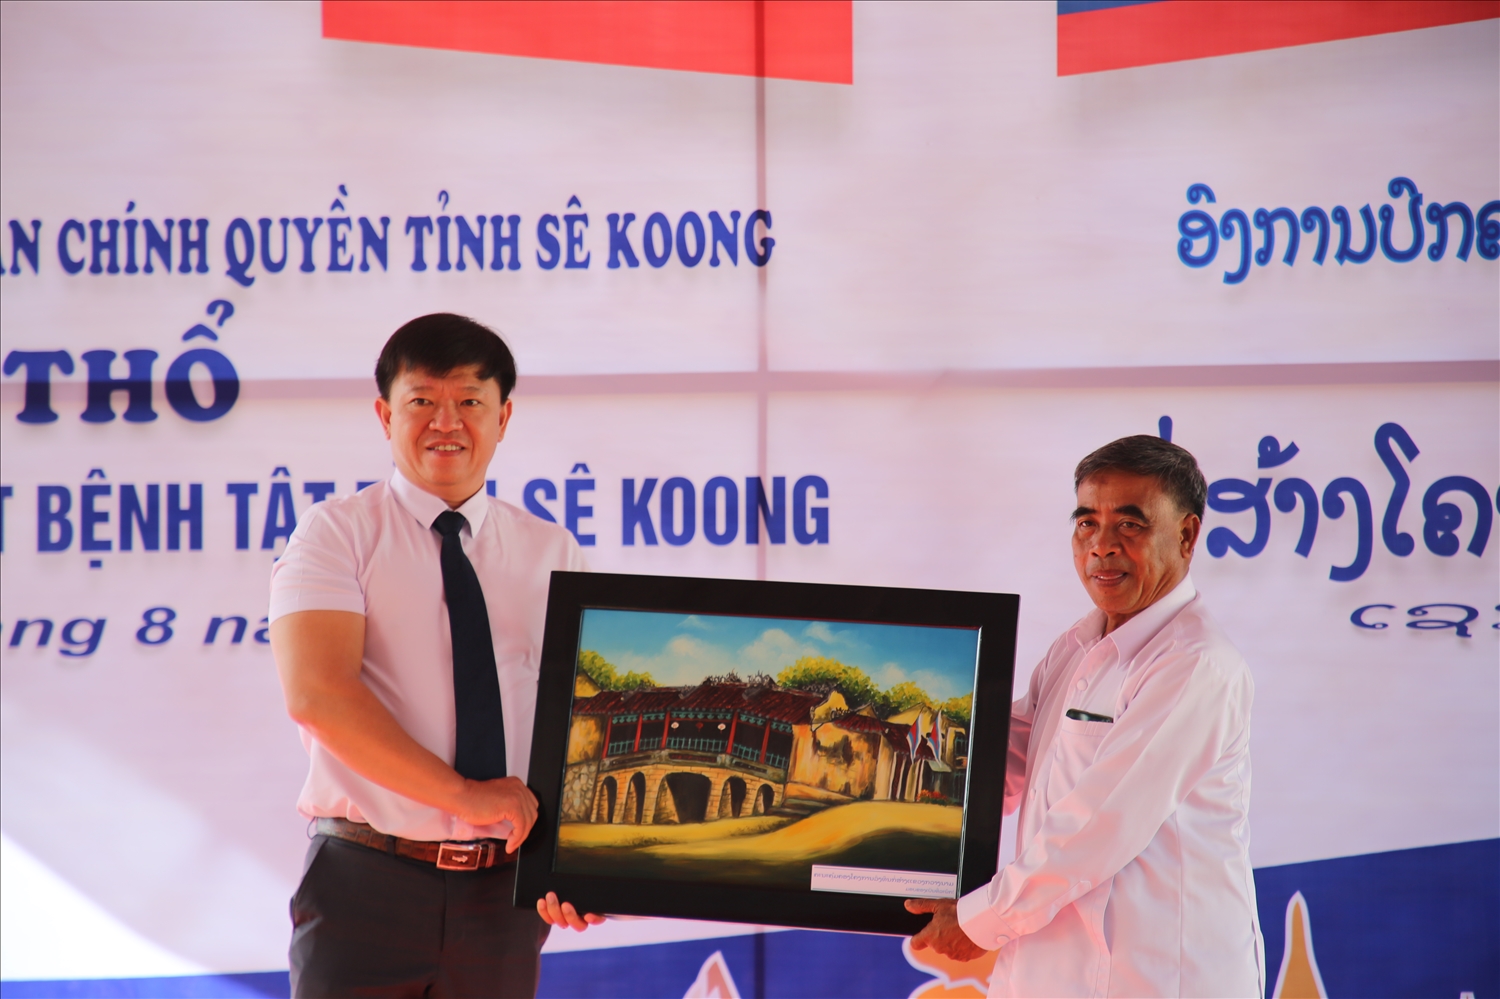 Đại diện Ban Quản lý dự án đầu tư xây dựng tỉnh Quảng Nam tặng quà lưu niệm cho Sở Y tế tỉnh Sê Kông nhân dịp khởi công công trình